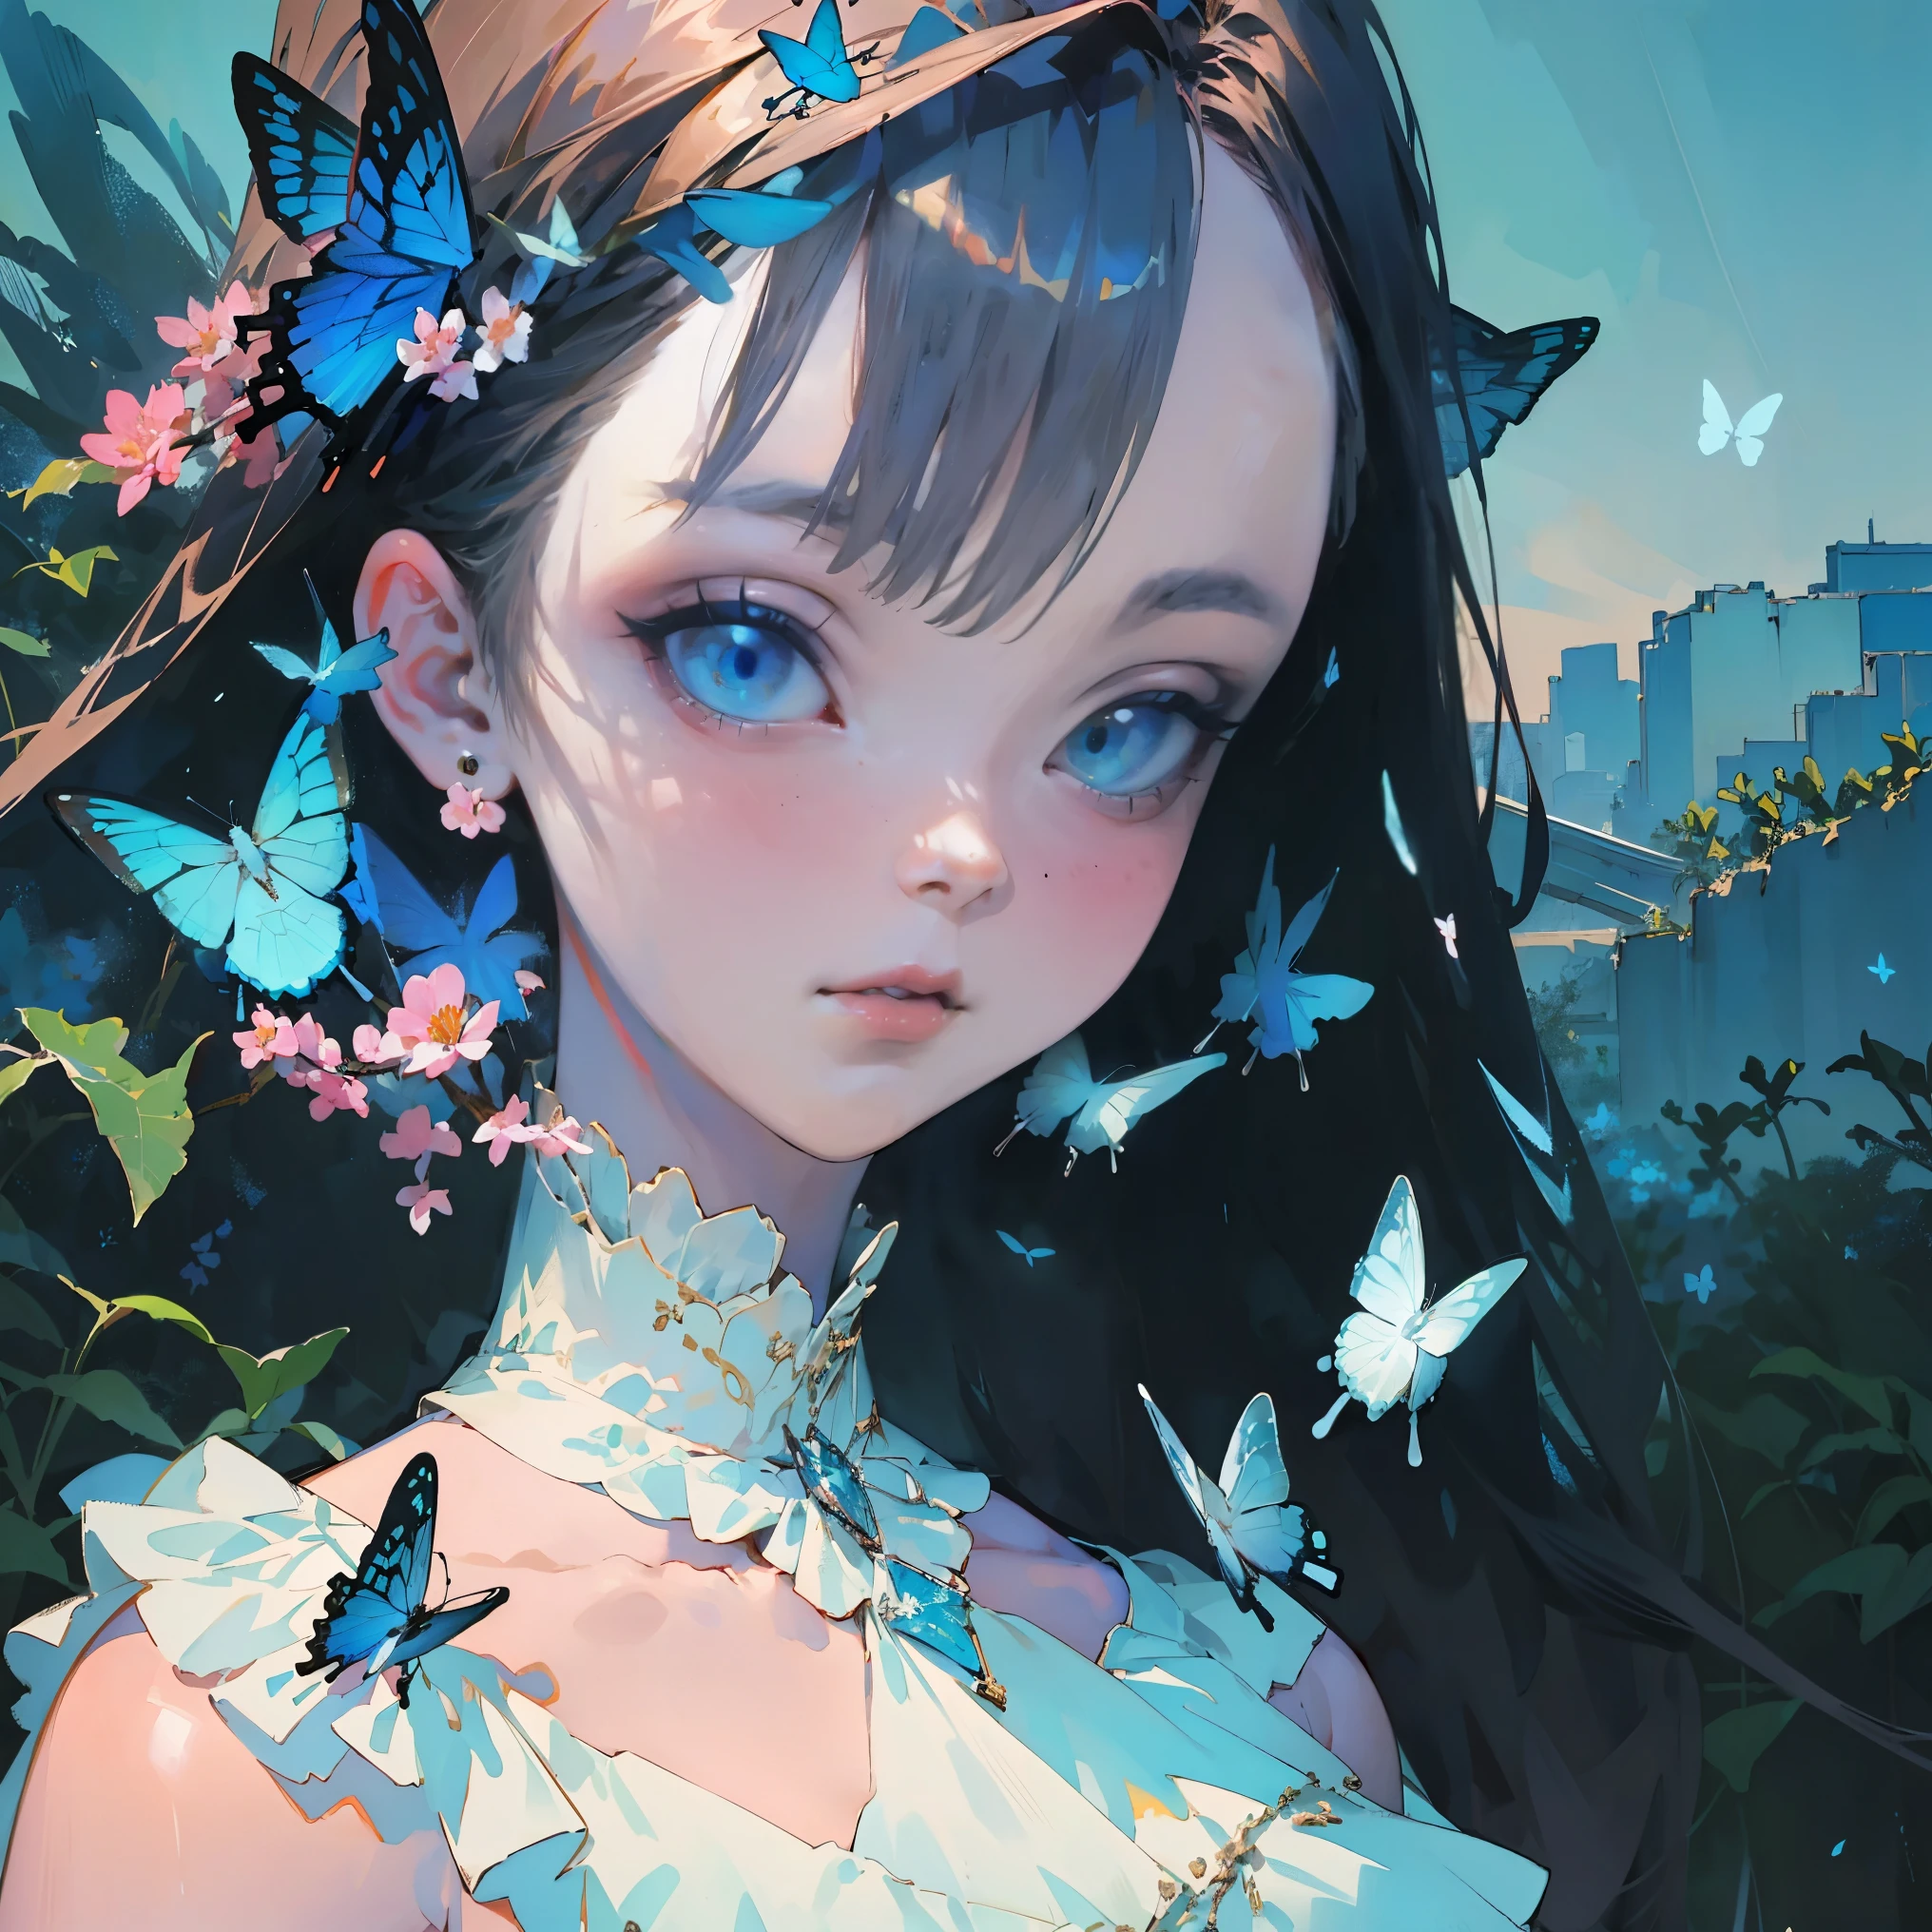 (calidad superior, obra maestra, Súper realista), Retrato de una hermosa y delicada niña con una expresión suave y triste, El paisaje en el fondo es un jardín con arbustos en flor y mariposas volando en tonos azules.